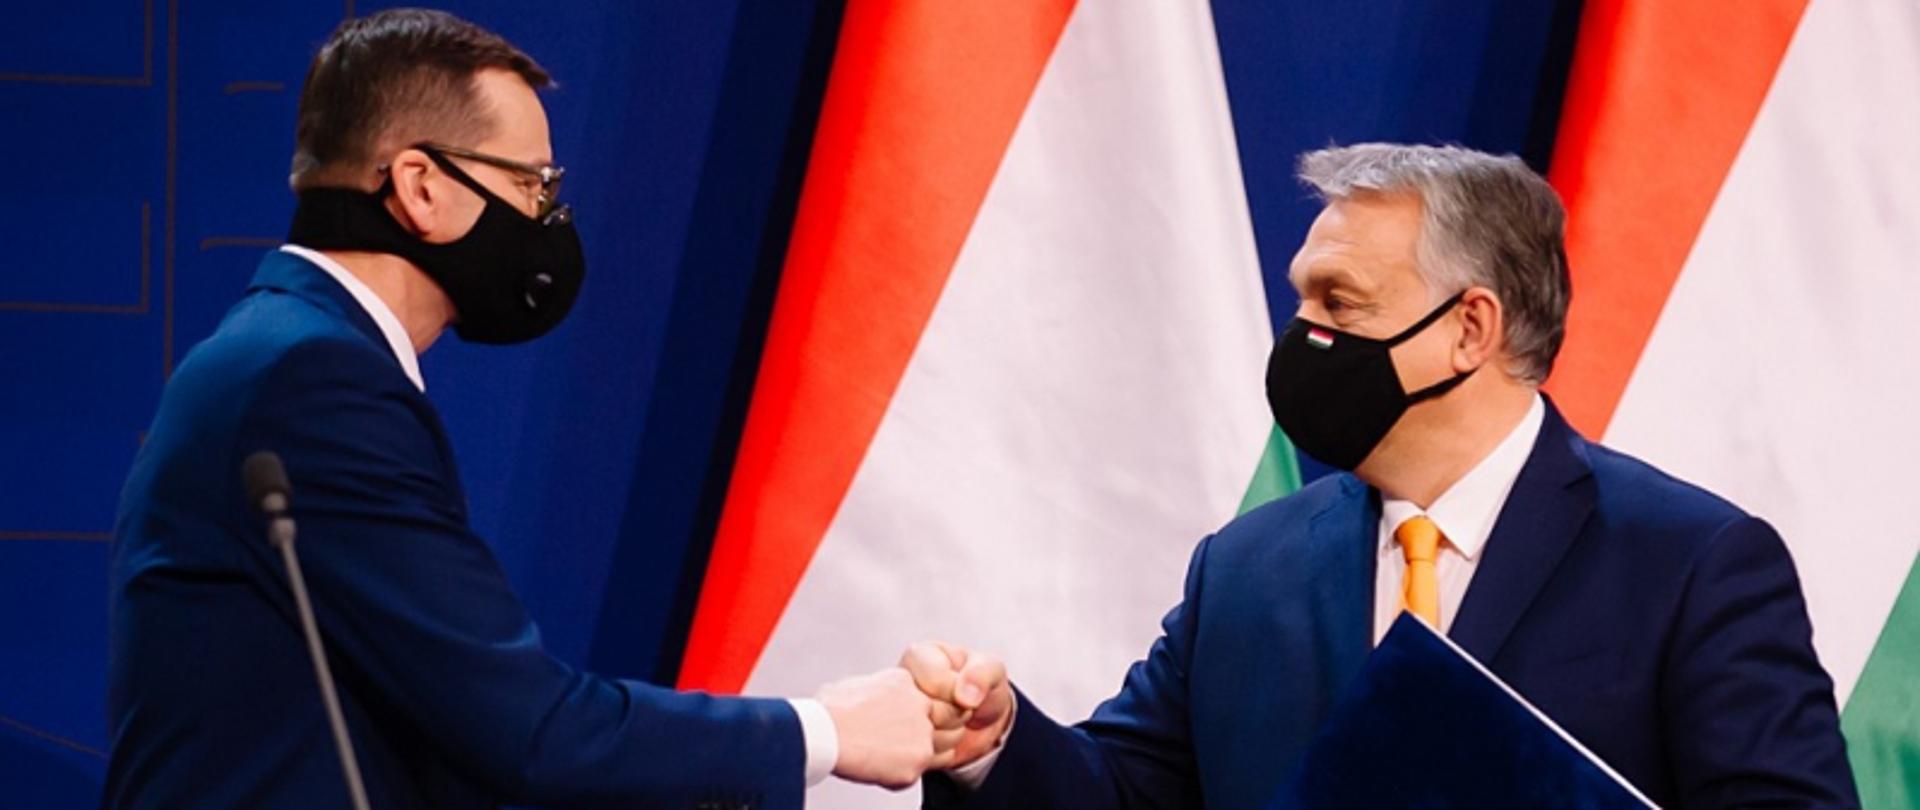 Mateusz Morawiecki miniszterelnök és Orbán Viktor miniszterelnök Budapesten